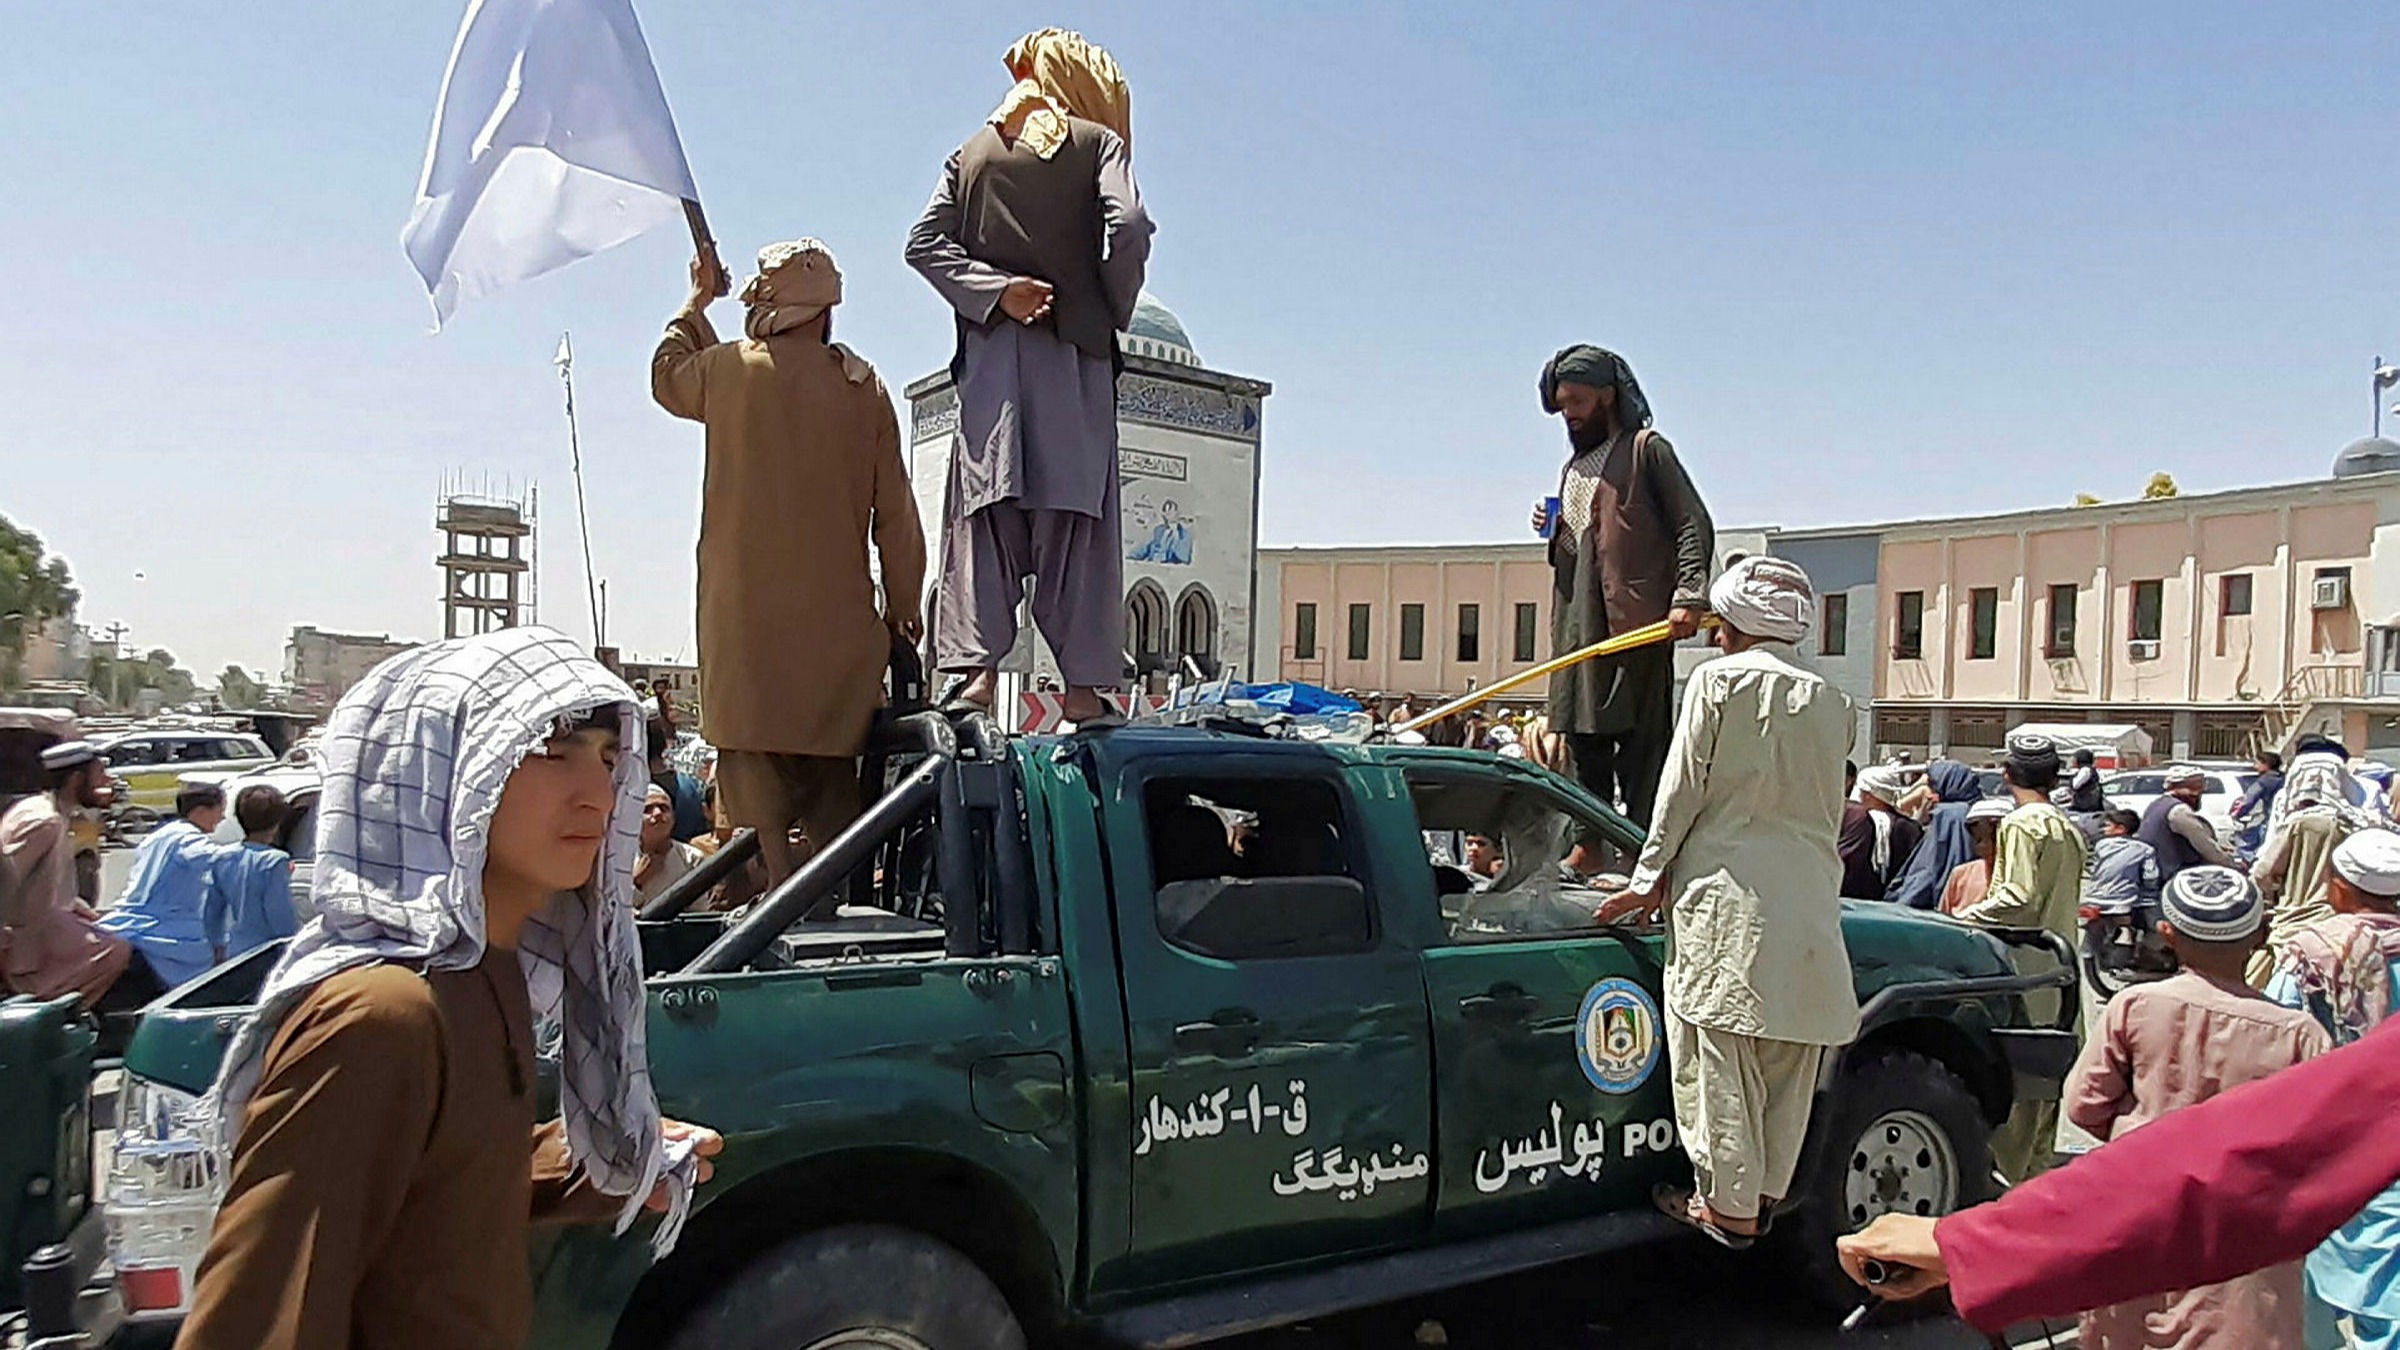 The Taliban captures Kabul